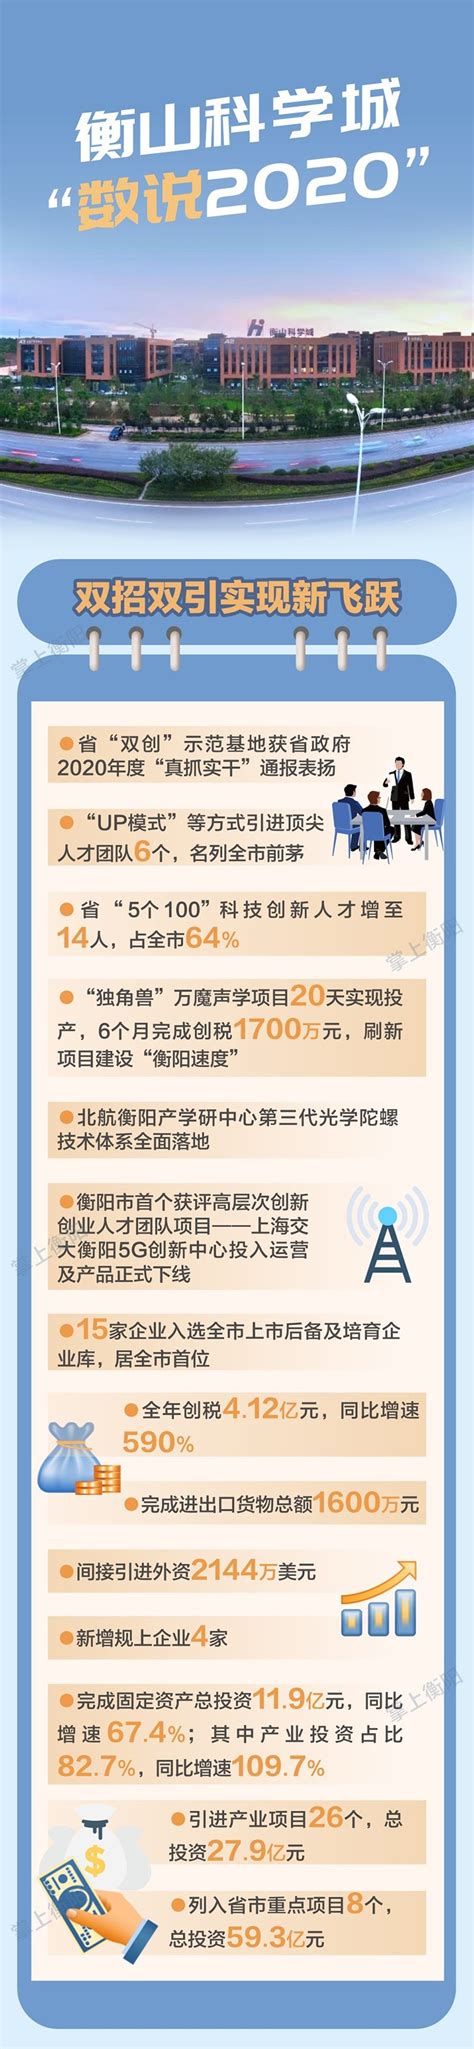 衡阳市人民政府门户网站-图解丨数说衡山科学城的“2020”